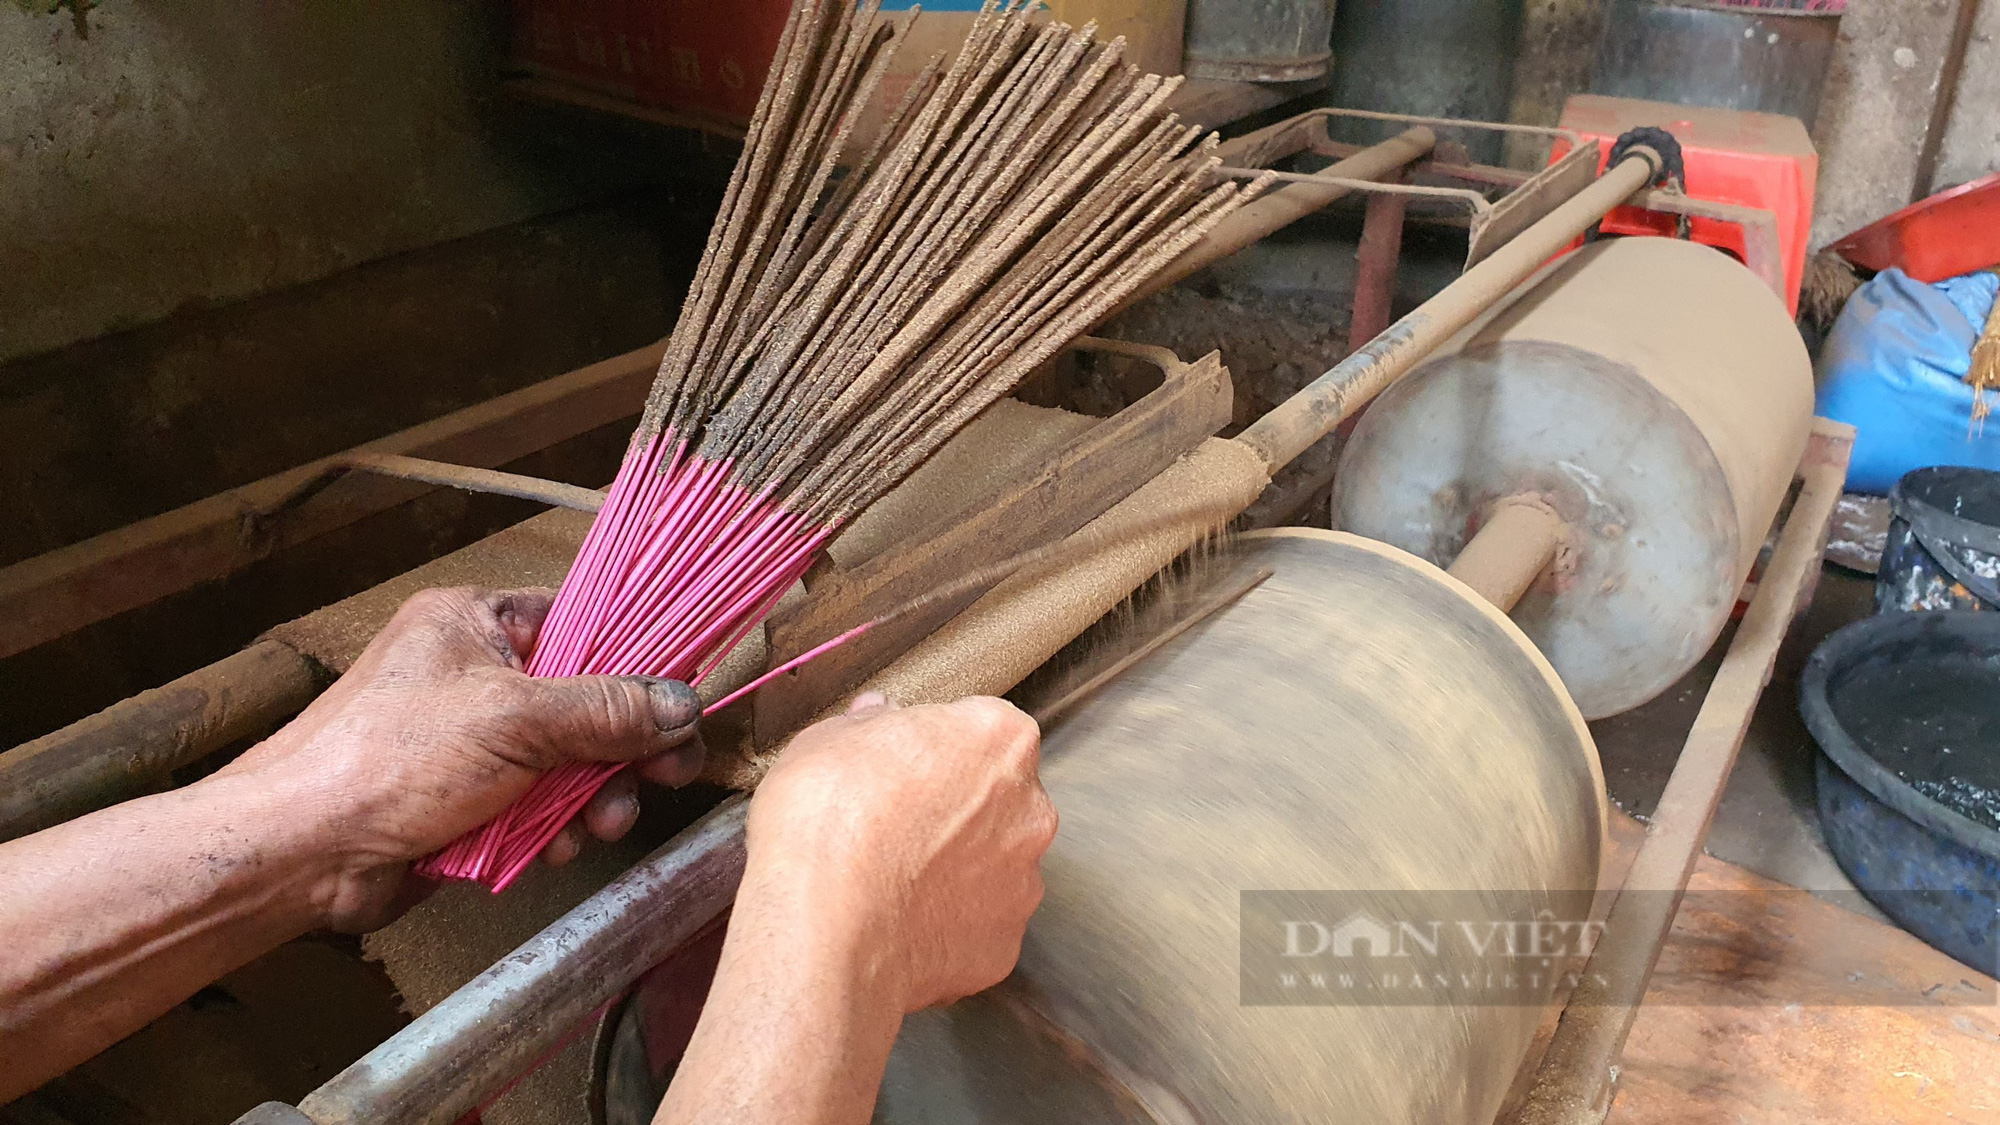 Đìu hiu làng nghề làm hương truyền thống tại Thanh Hóa những ngày cận Tết - Ảnh 3.